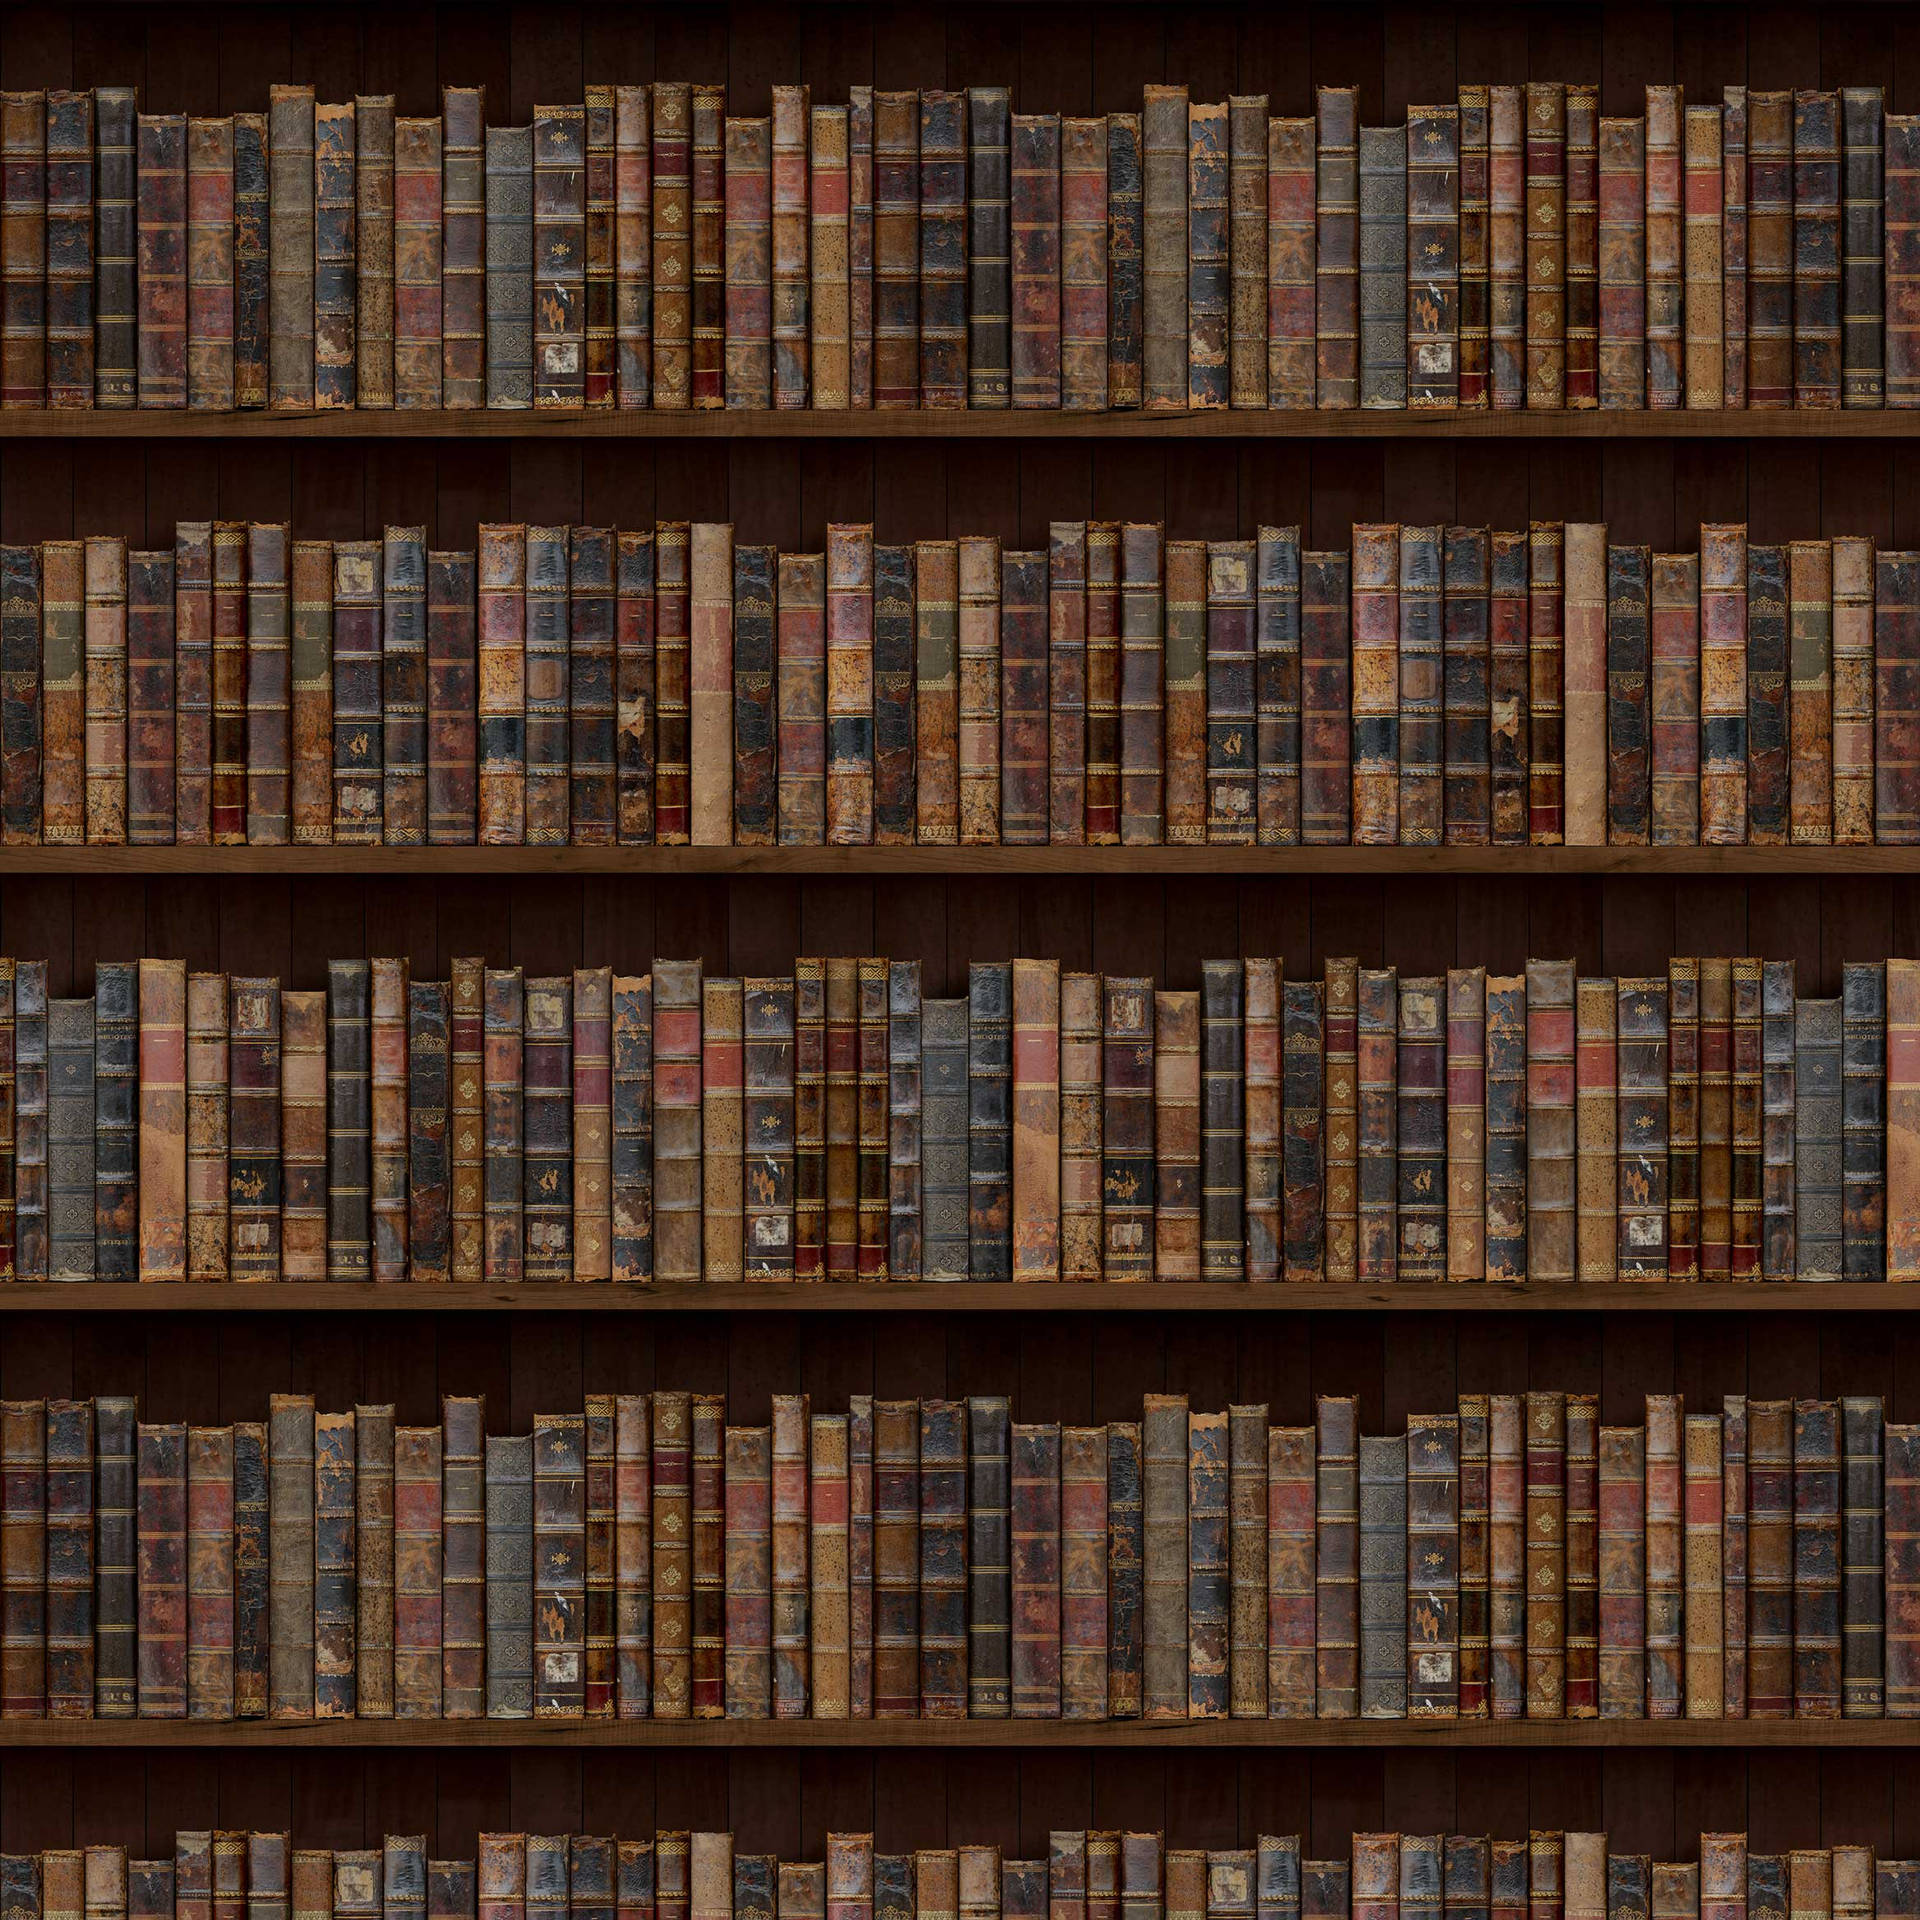 Unabiblioteca Con Muchos Libros En Estanterías Fondo de pantalla